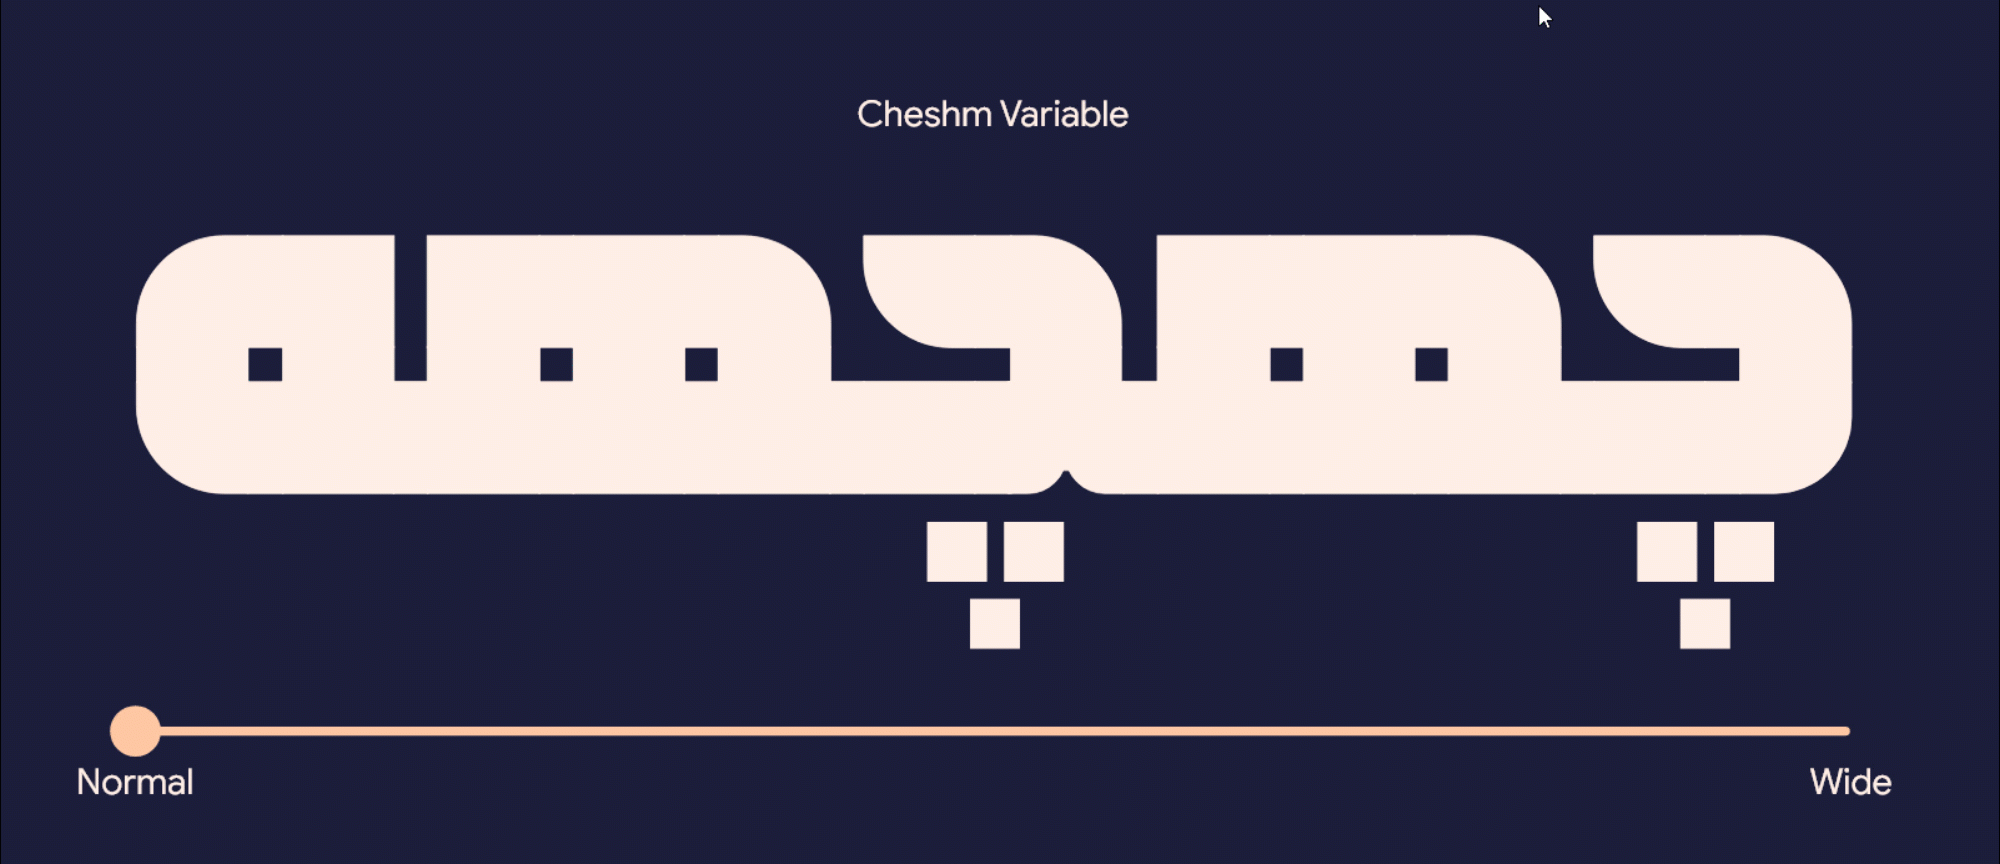 07 Cheshm Variable